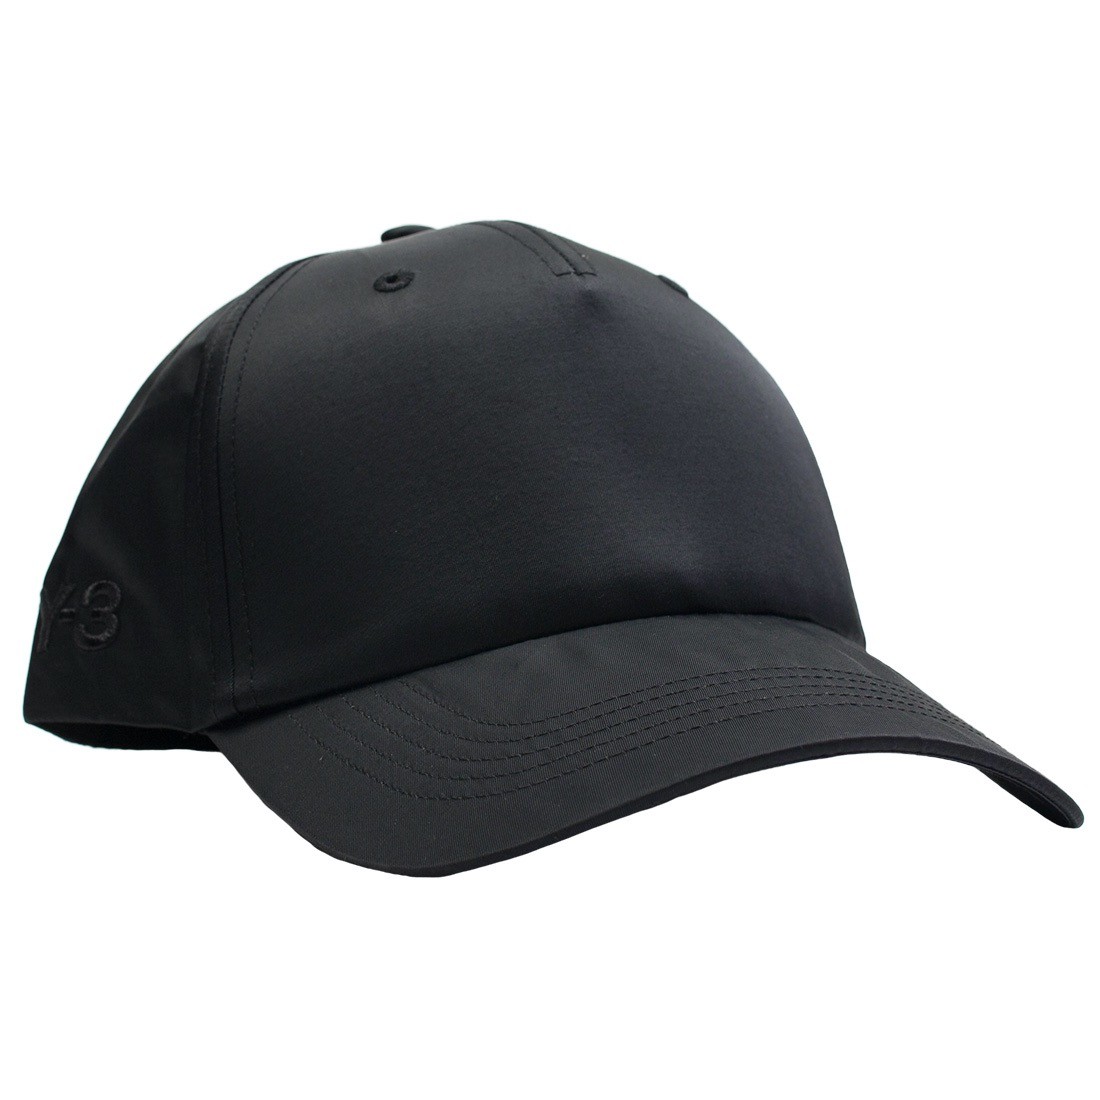 y3 black hat